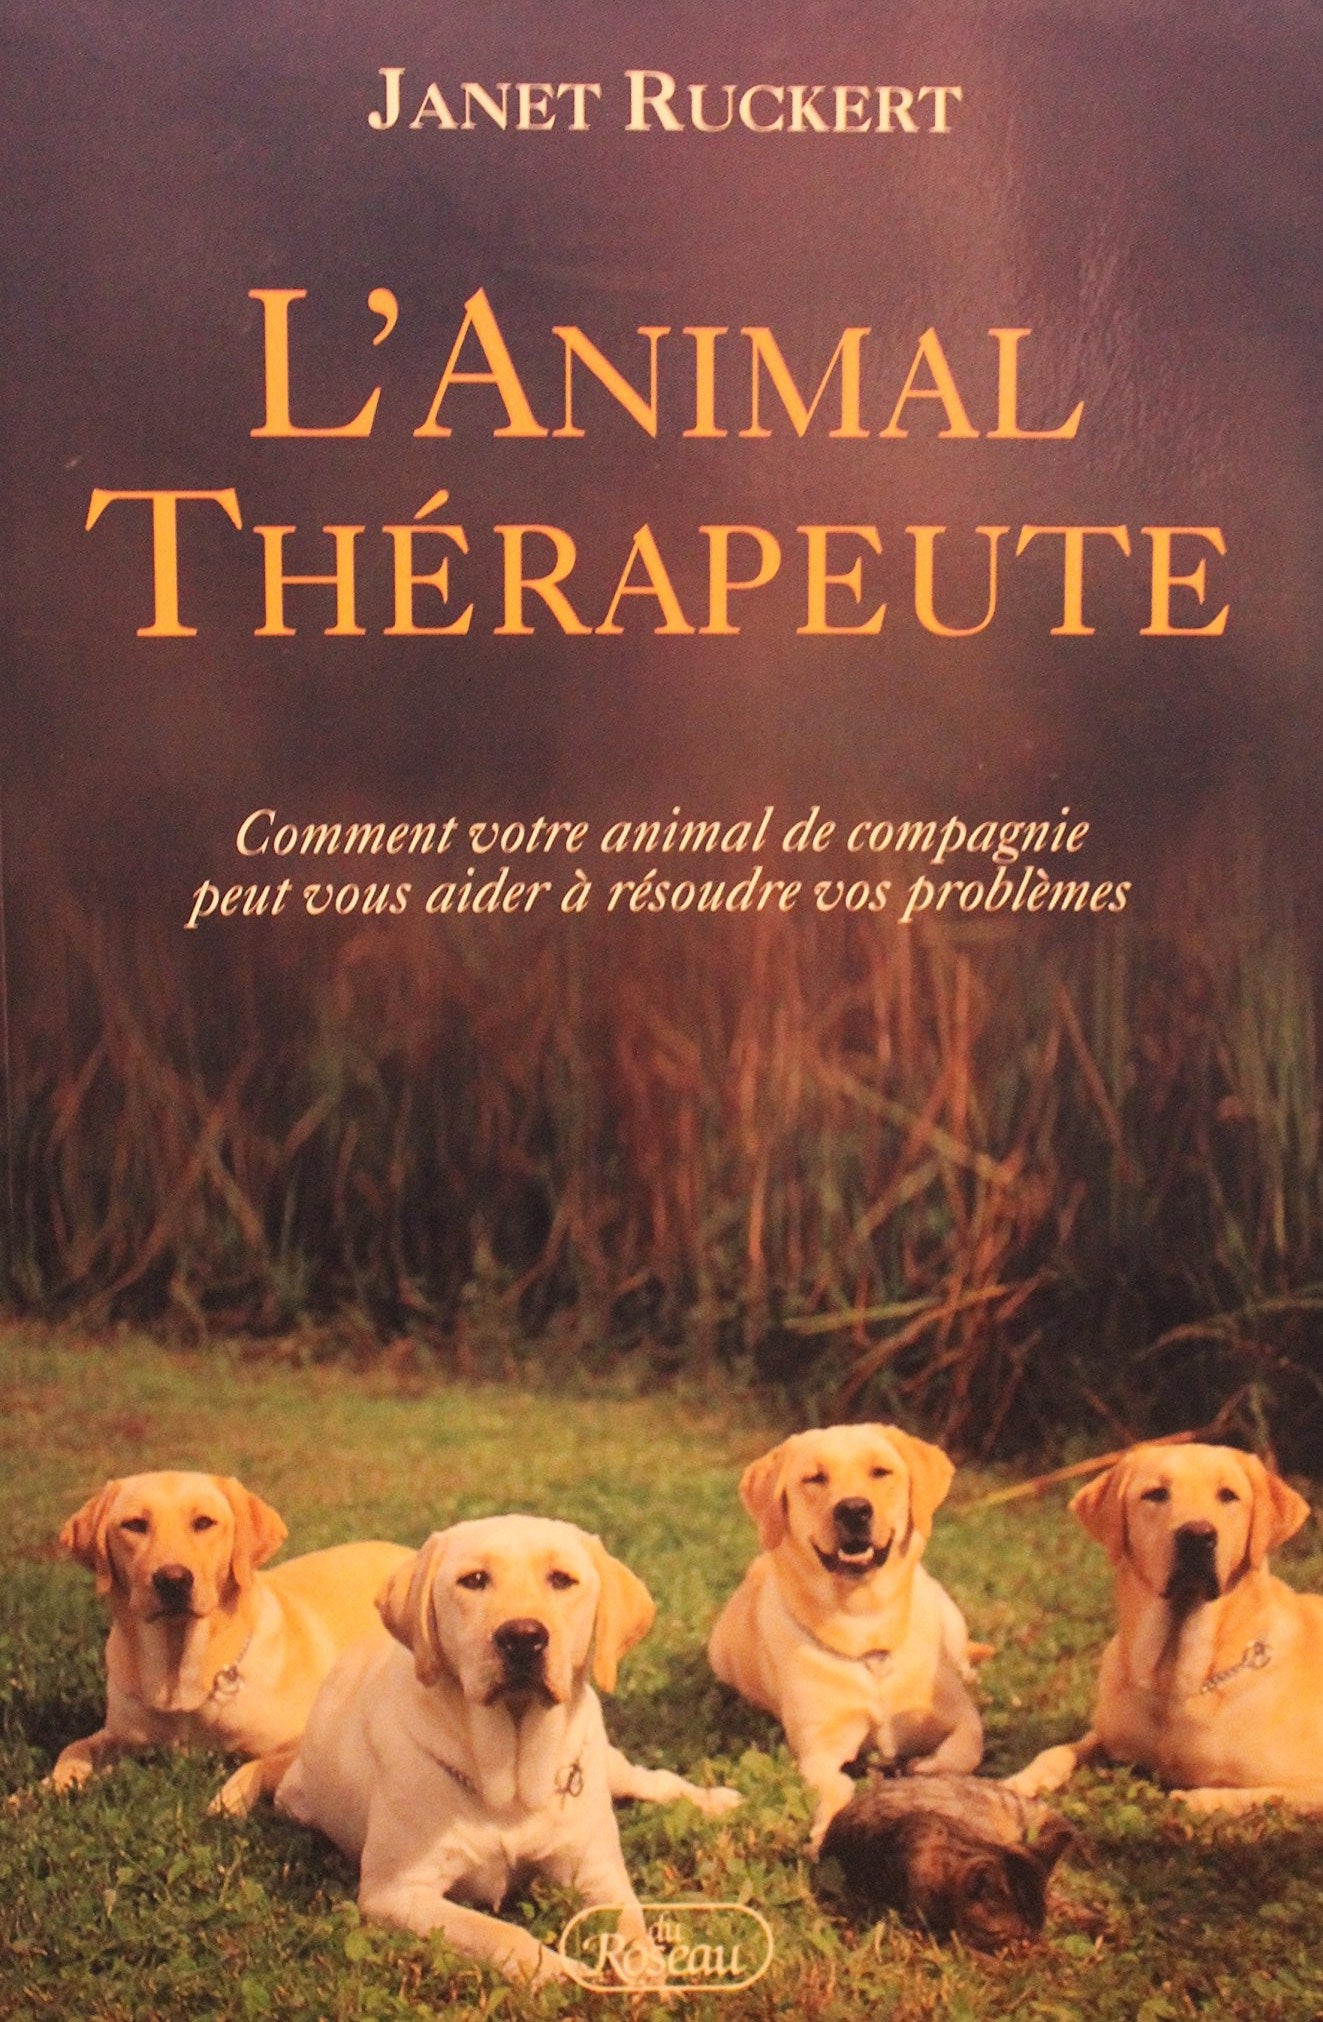 Livre ISBN 2920083872 L'animal thérapeutre : comment votre animal de compagnie peut vous aider à résoudre vos problèmes (Janet Ruckert)